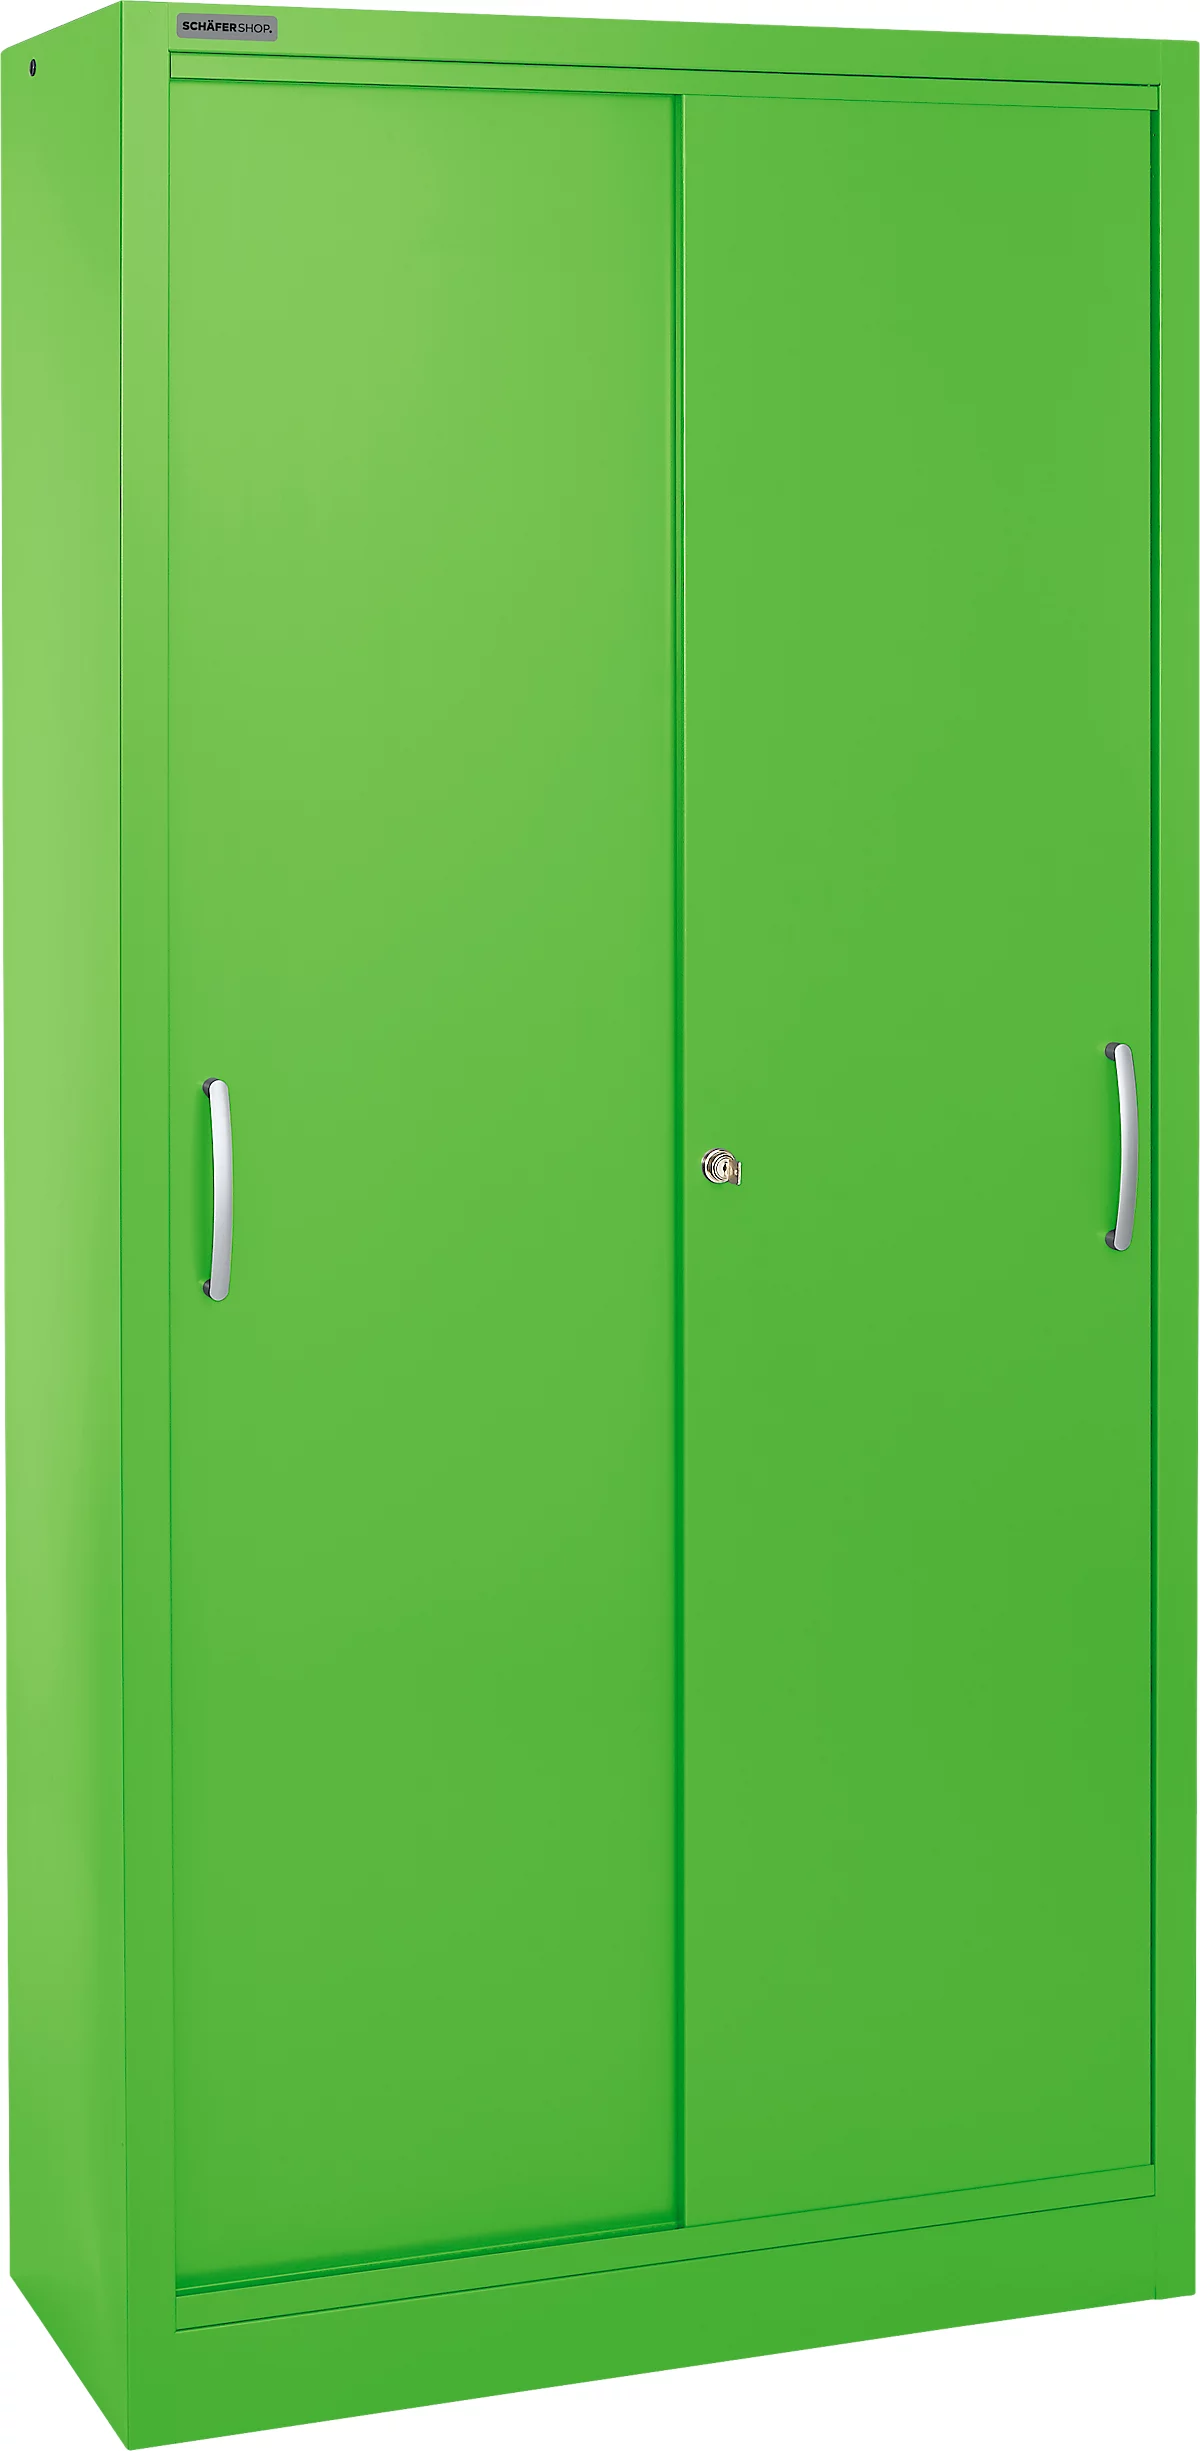 Schäfer Shop Select Armario de puertas correderas, 5 alturas de archivo, An 1200 mm, verde manzana RAL 6018